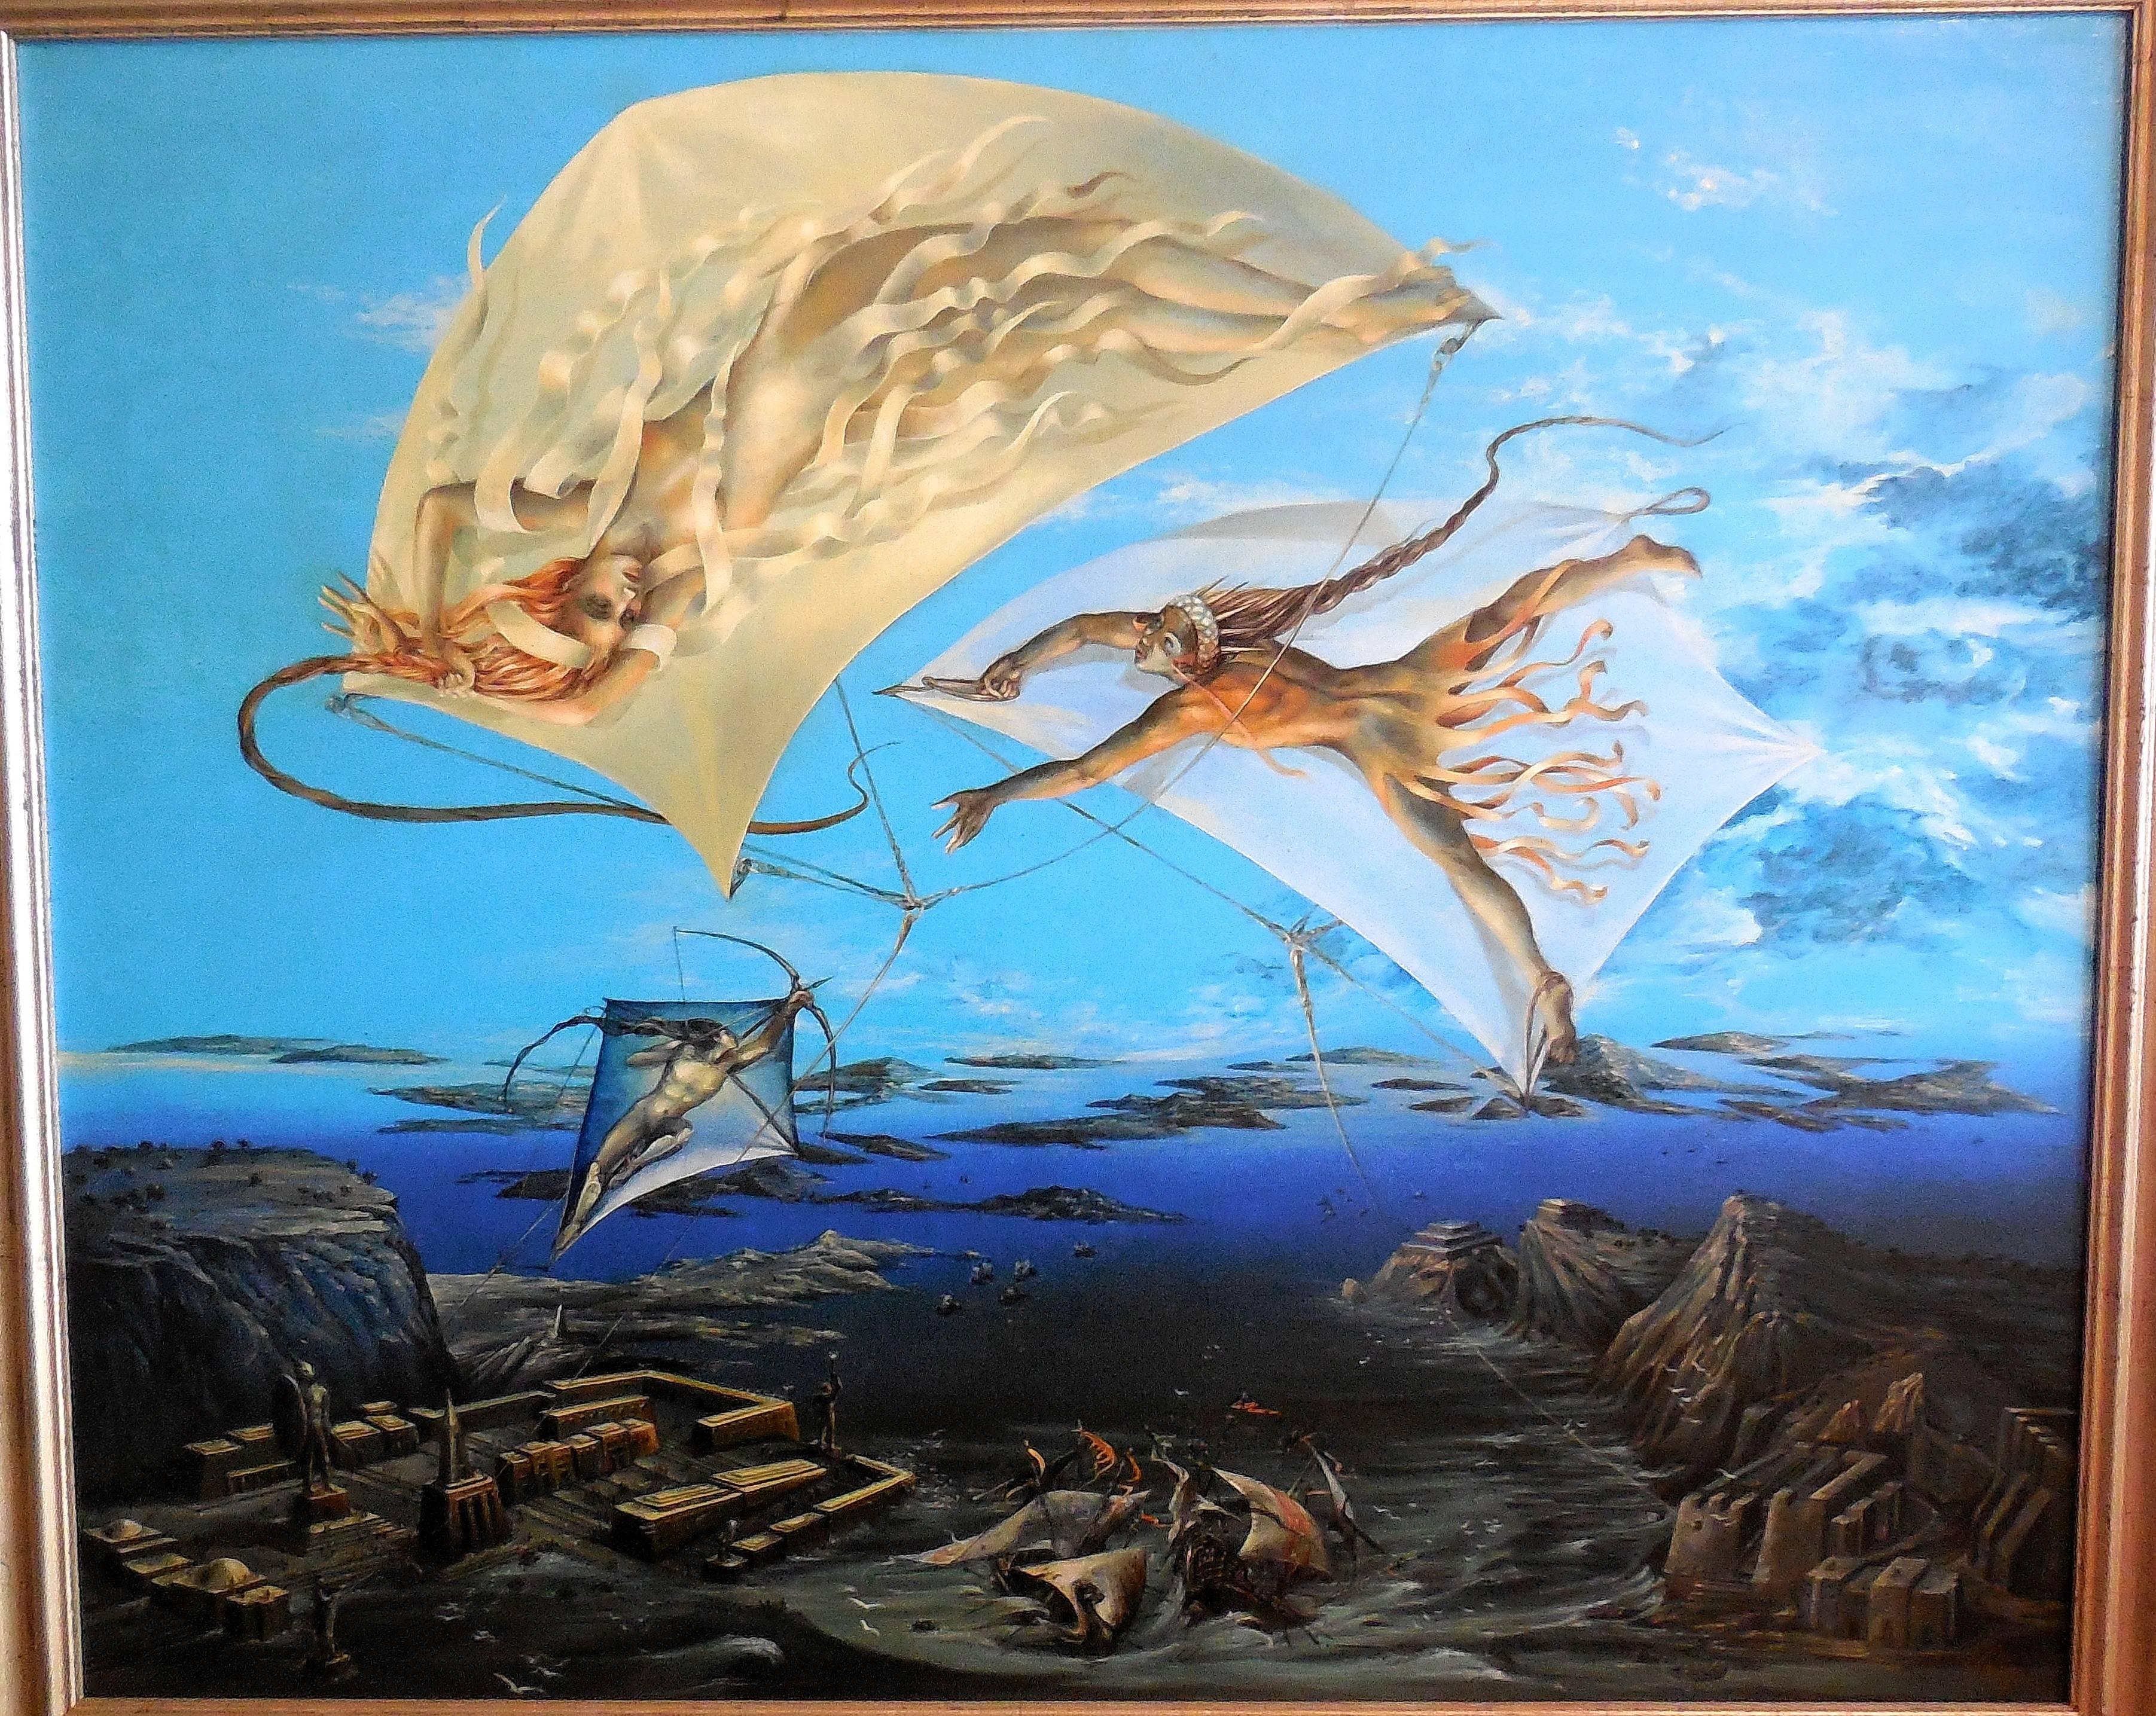 Peter Kolin Figurative Painting – Atlantis, großes surrealistisches Ölgemälde. Wiener Fantastischer Realismus